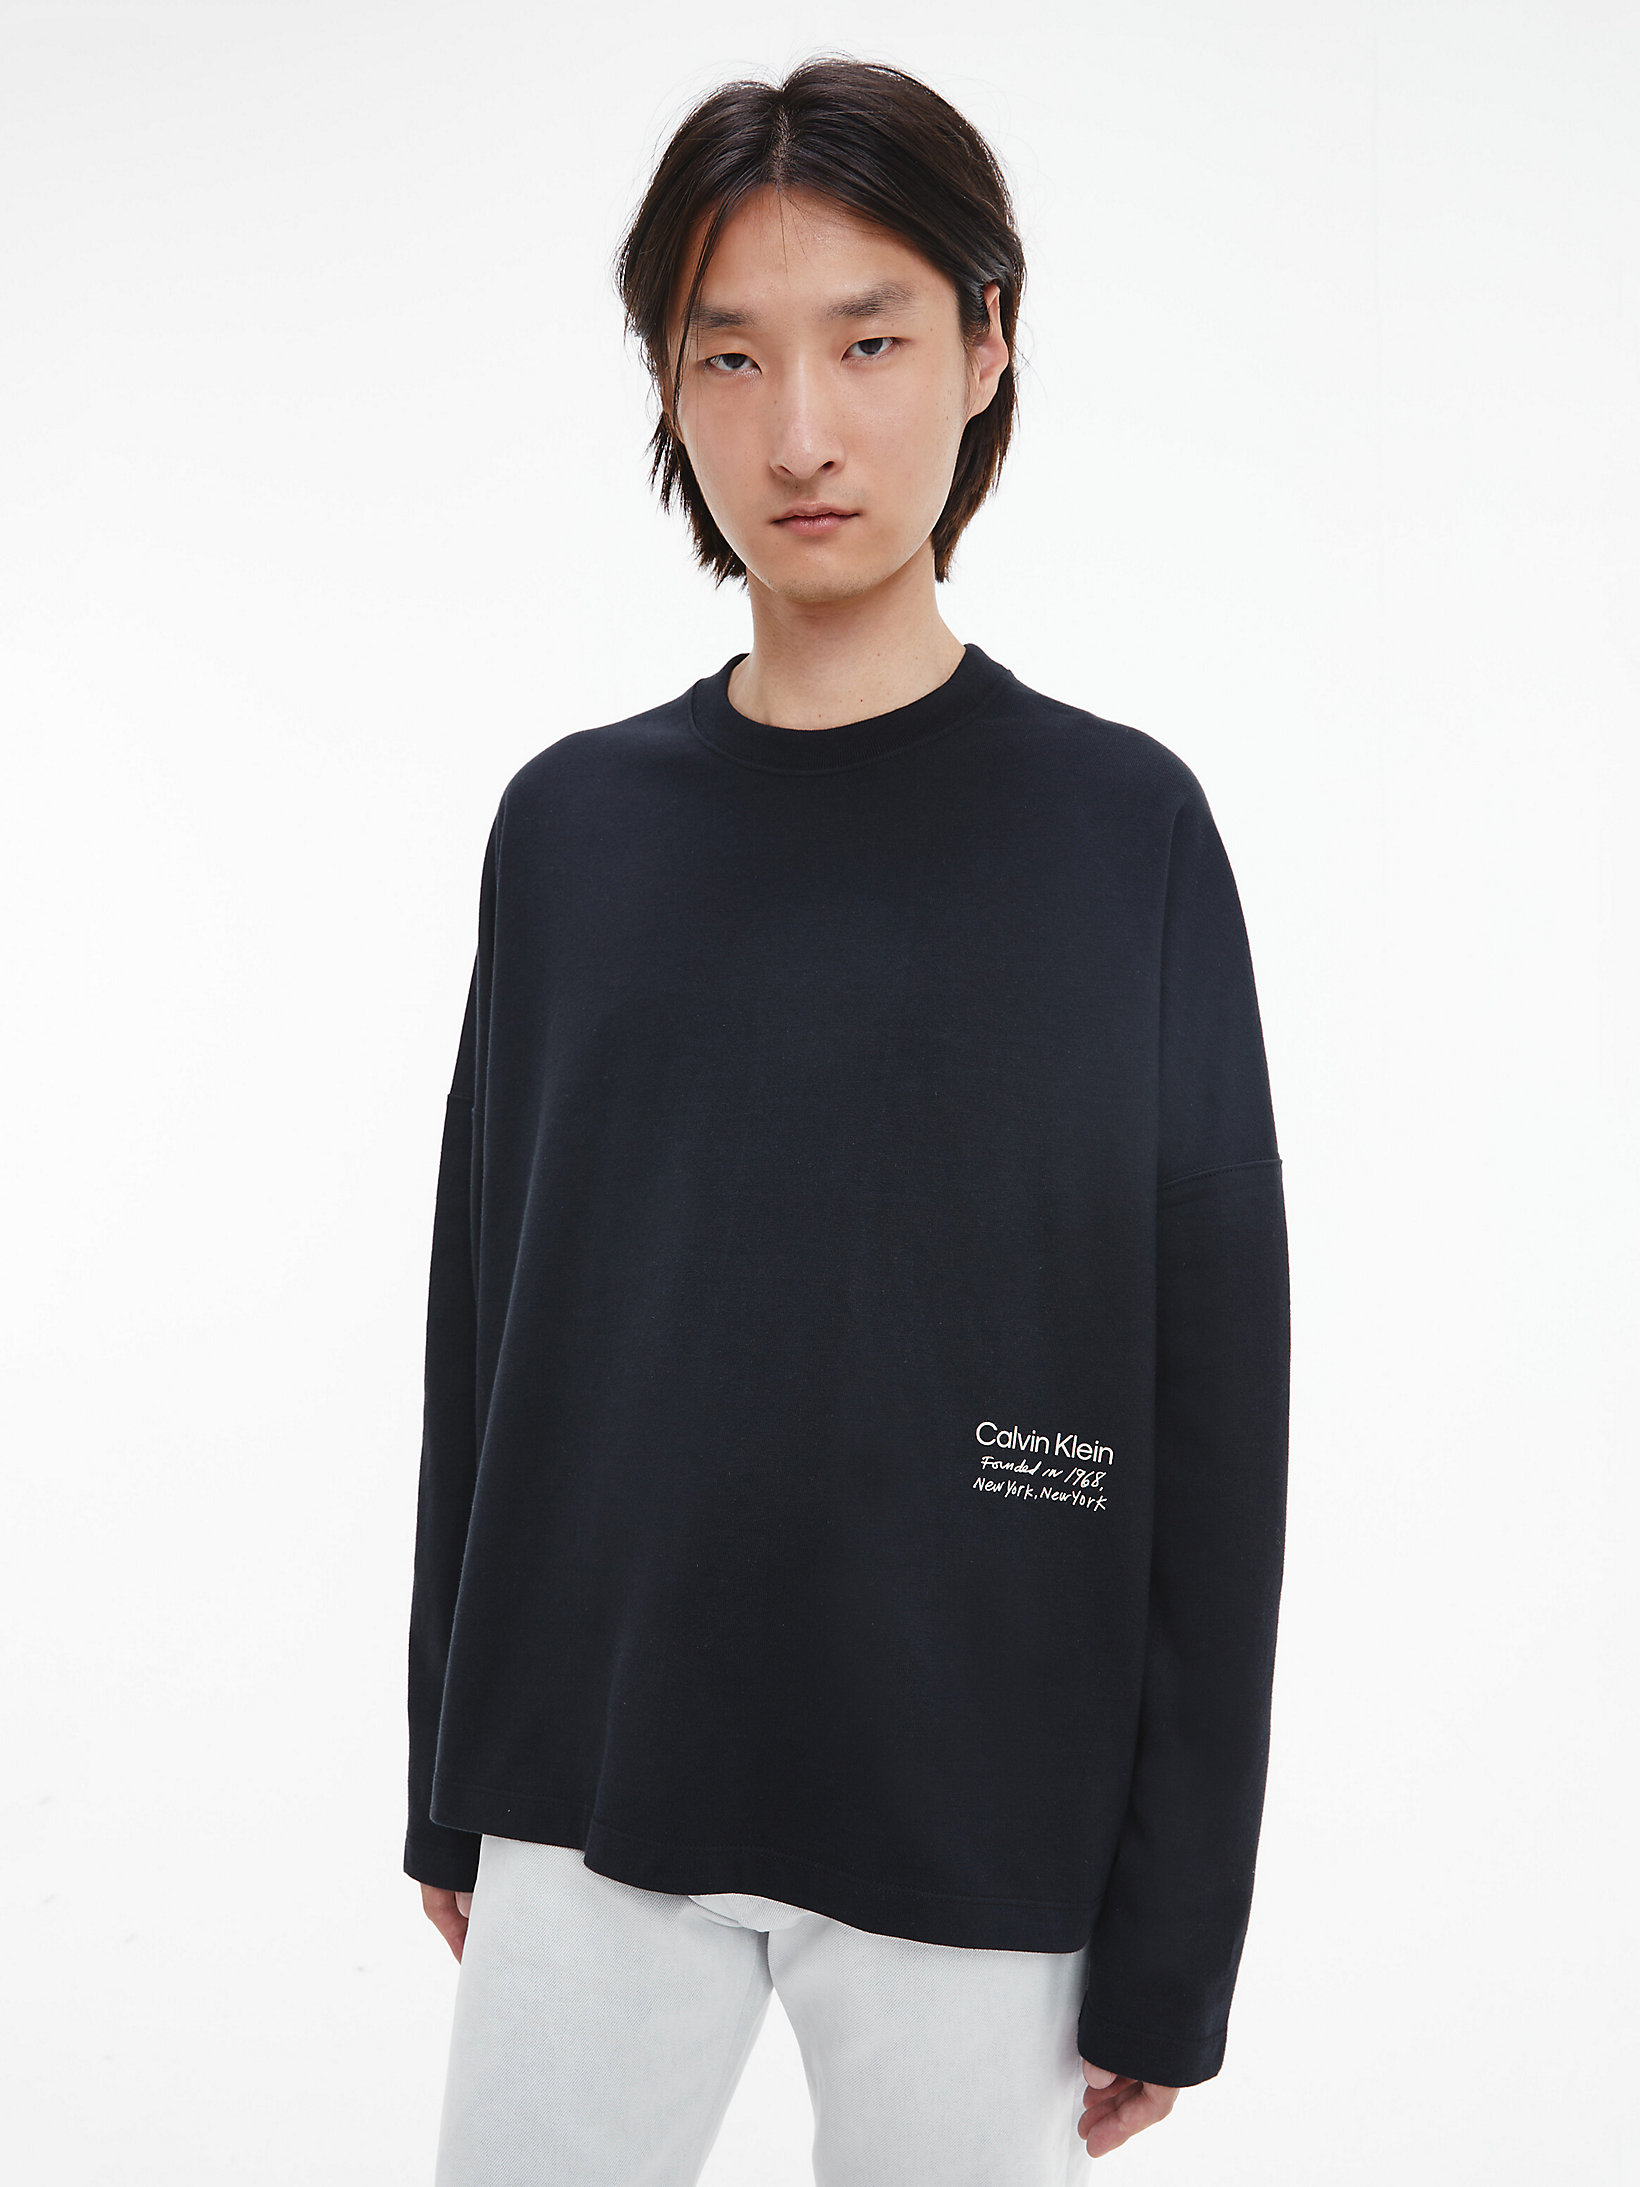 Black Beauty > Unisex-Langarmshirt Mit Print – CK Standards > undefined Herren - Calvin Klein